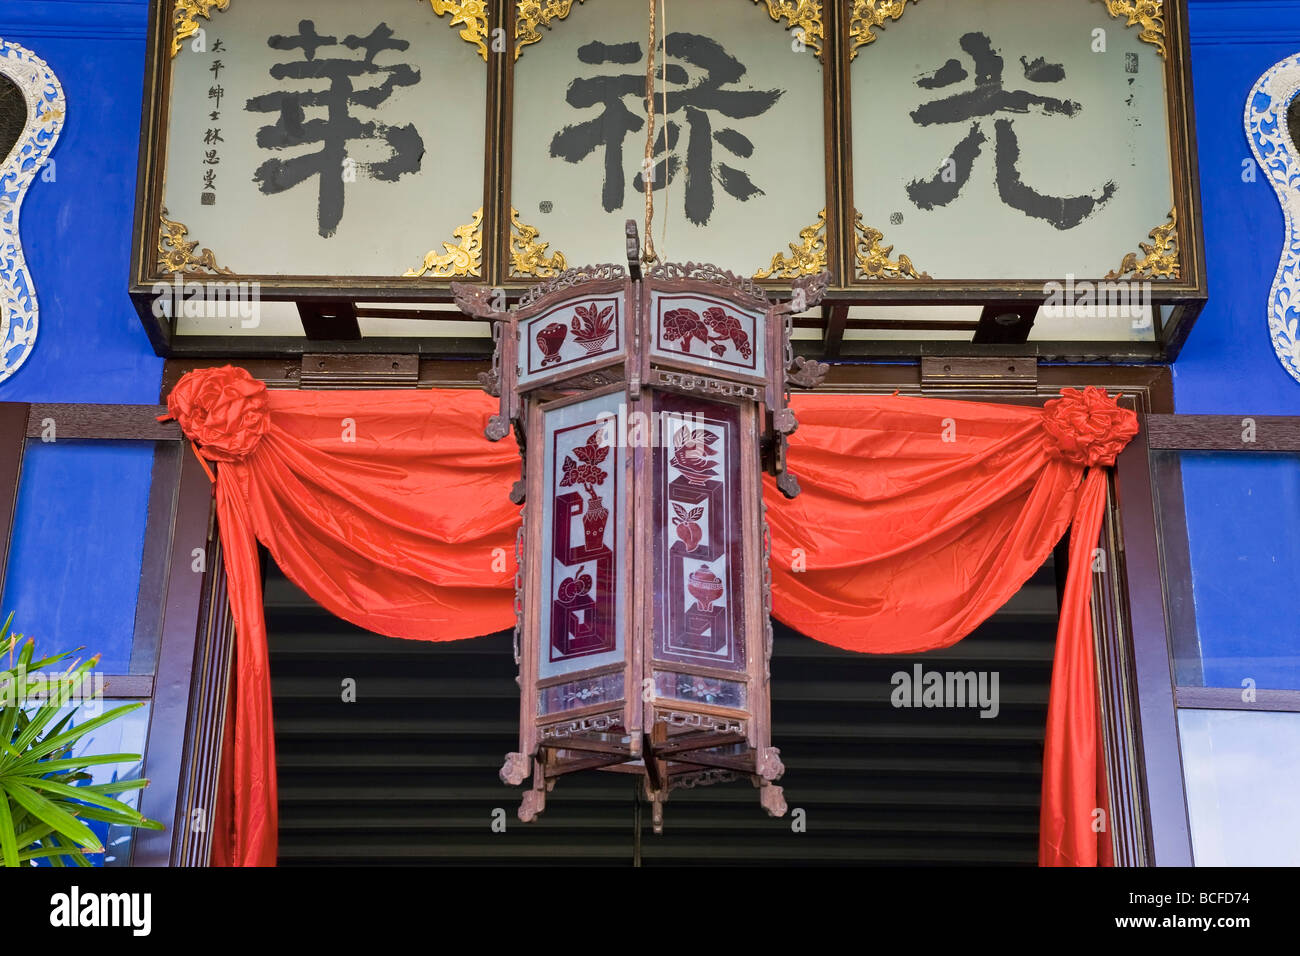 La Malaisie, Penang, (Pulau Pinang), Georgetown, quartier chinois, lanterne de papier et l'écriture chinoise Banque D'Images